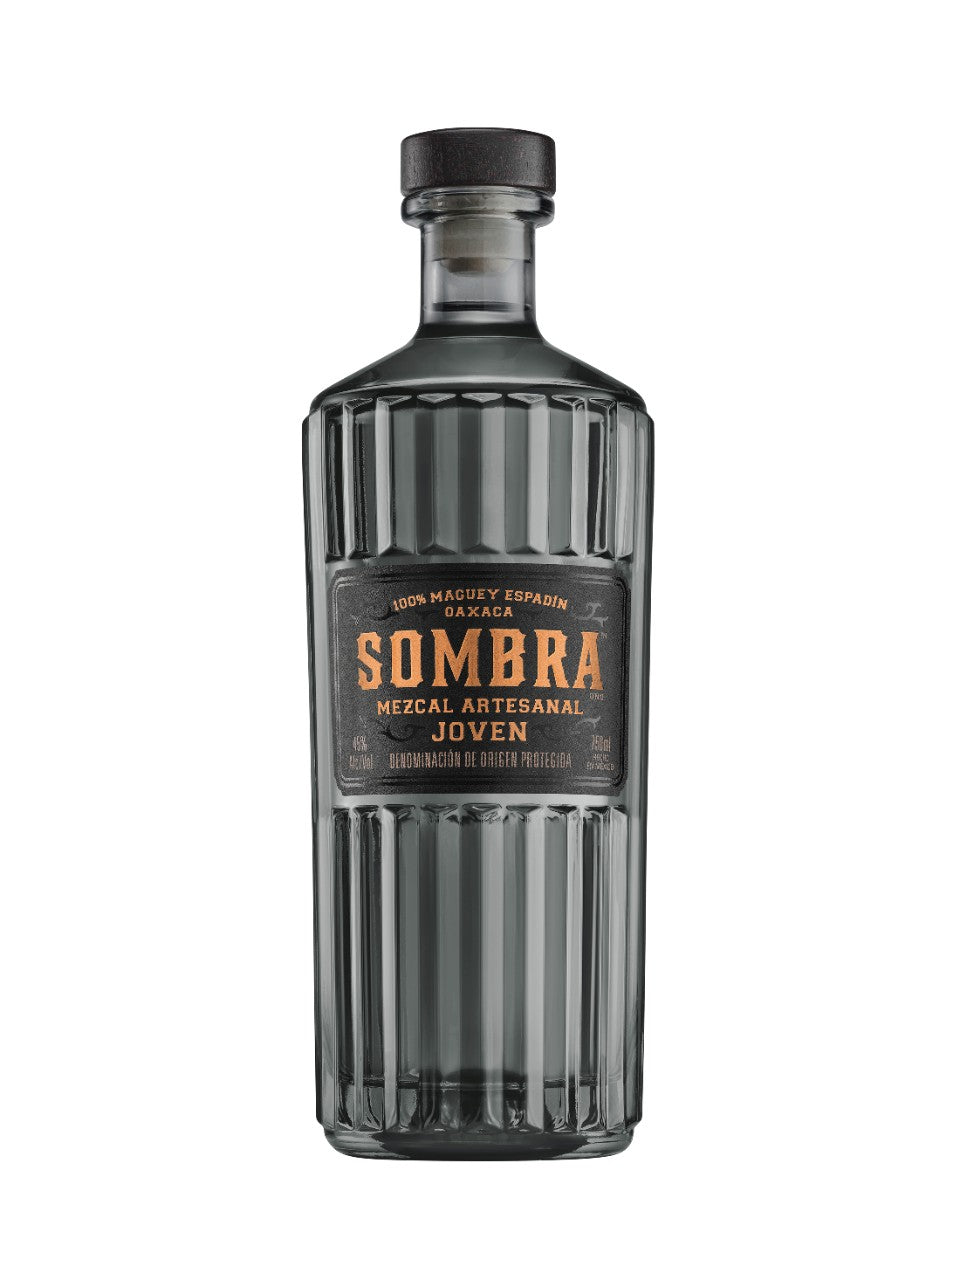 Sombra Joven Mezcal 750 mL bottle